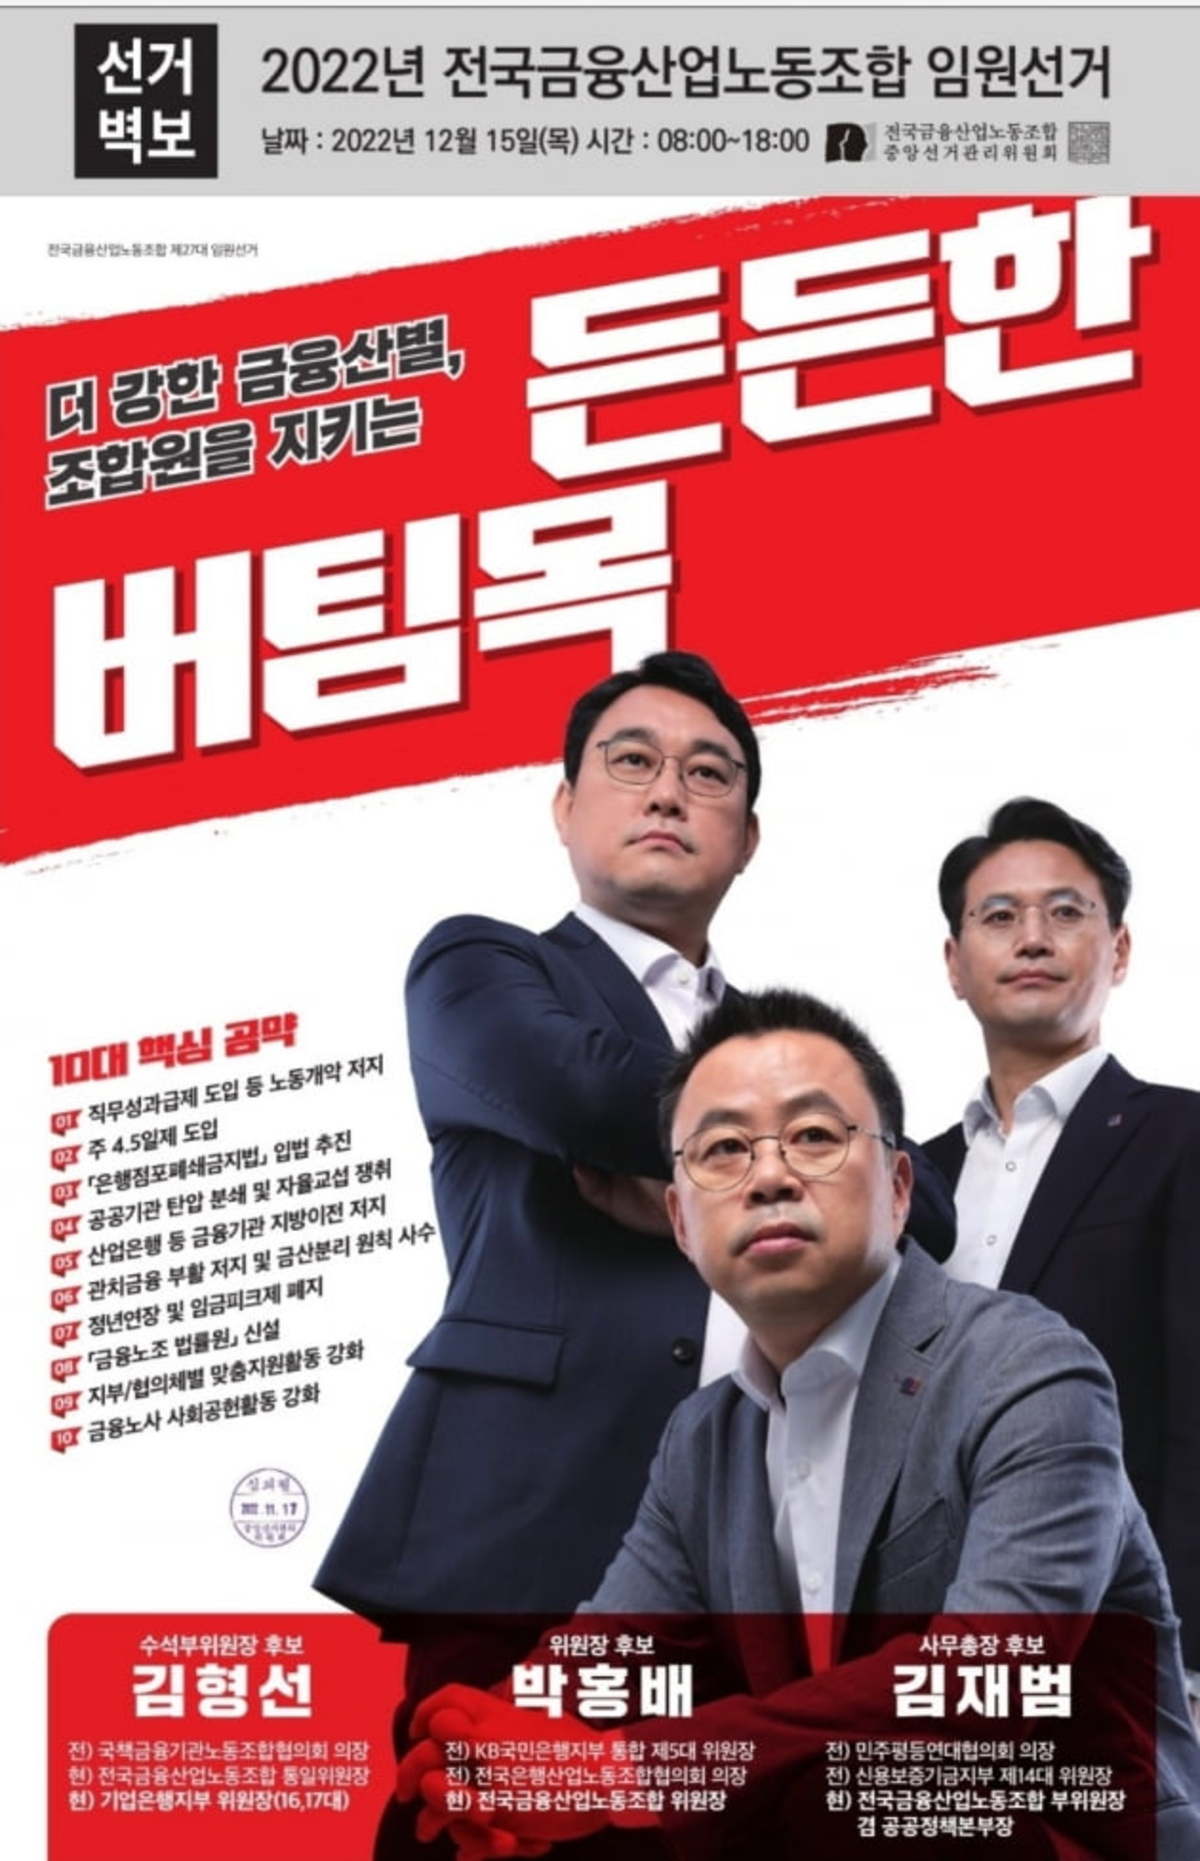 다음달 15일 금융노조 차기 위원장 선거…박홍배 단독 출마 | 한국경제